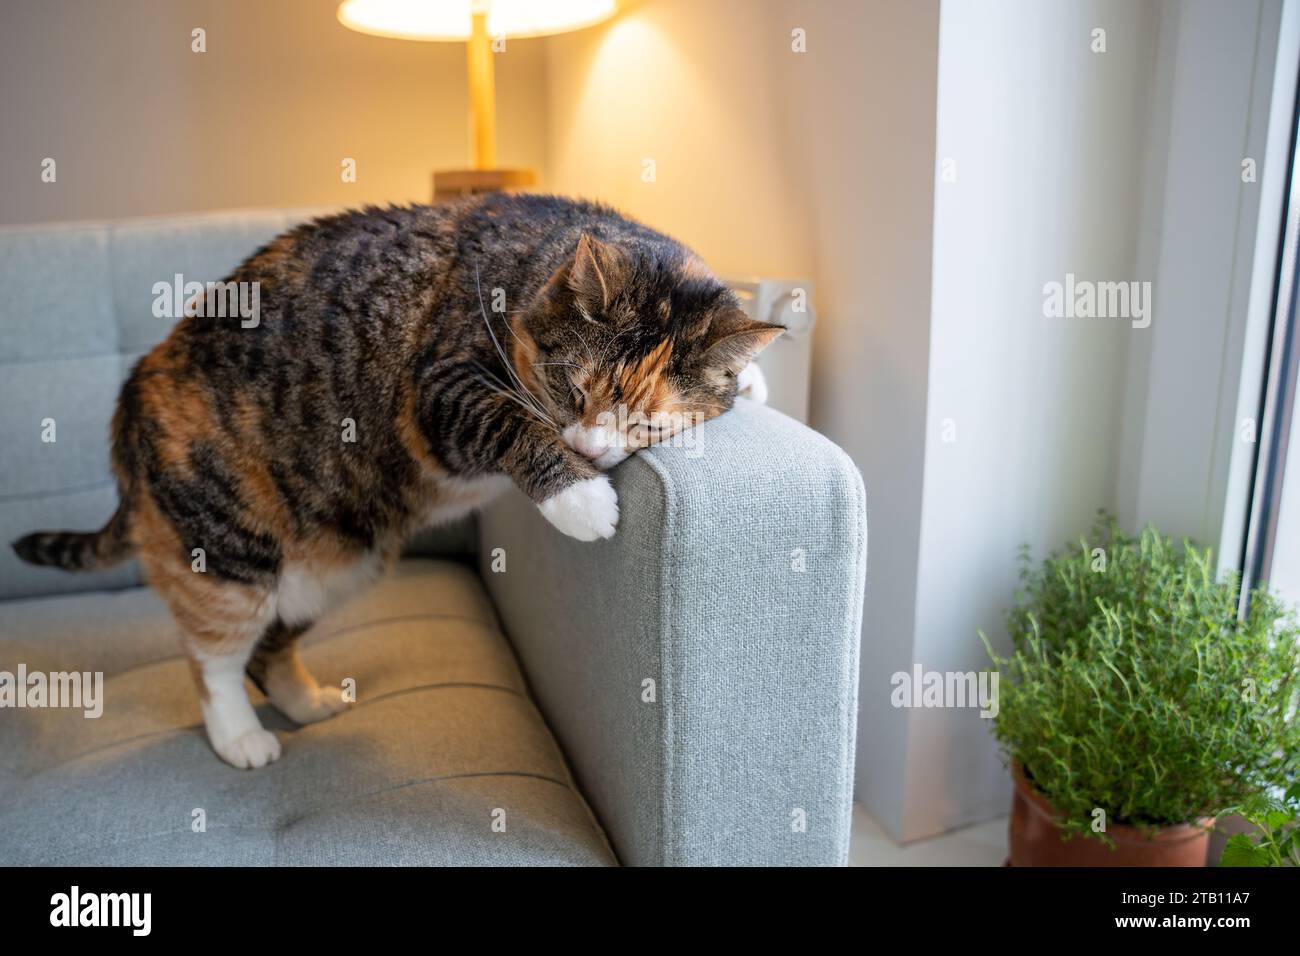 Aktives Schnurren der Katze auf dem Sofa, Markieren des Territoriums mit speziellen Drüsen, Sprühen des Duftes Stockfoto